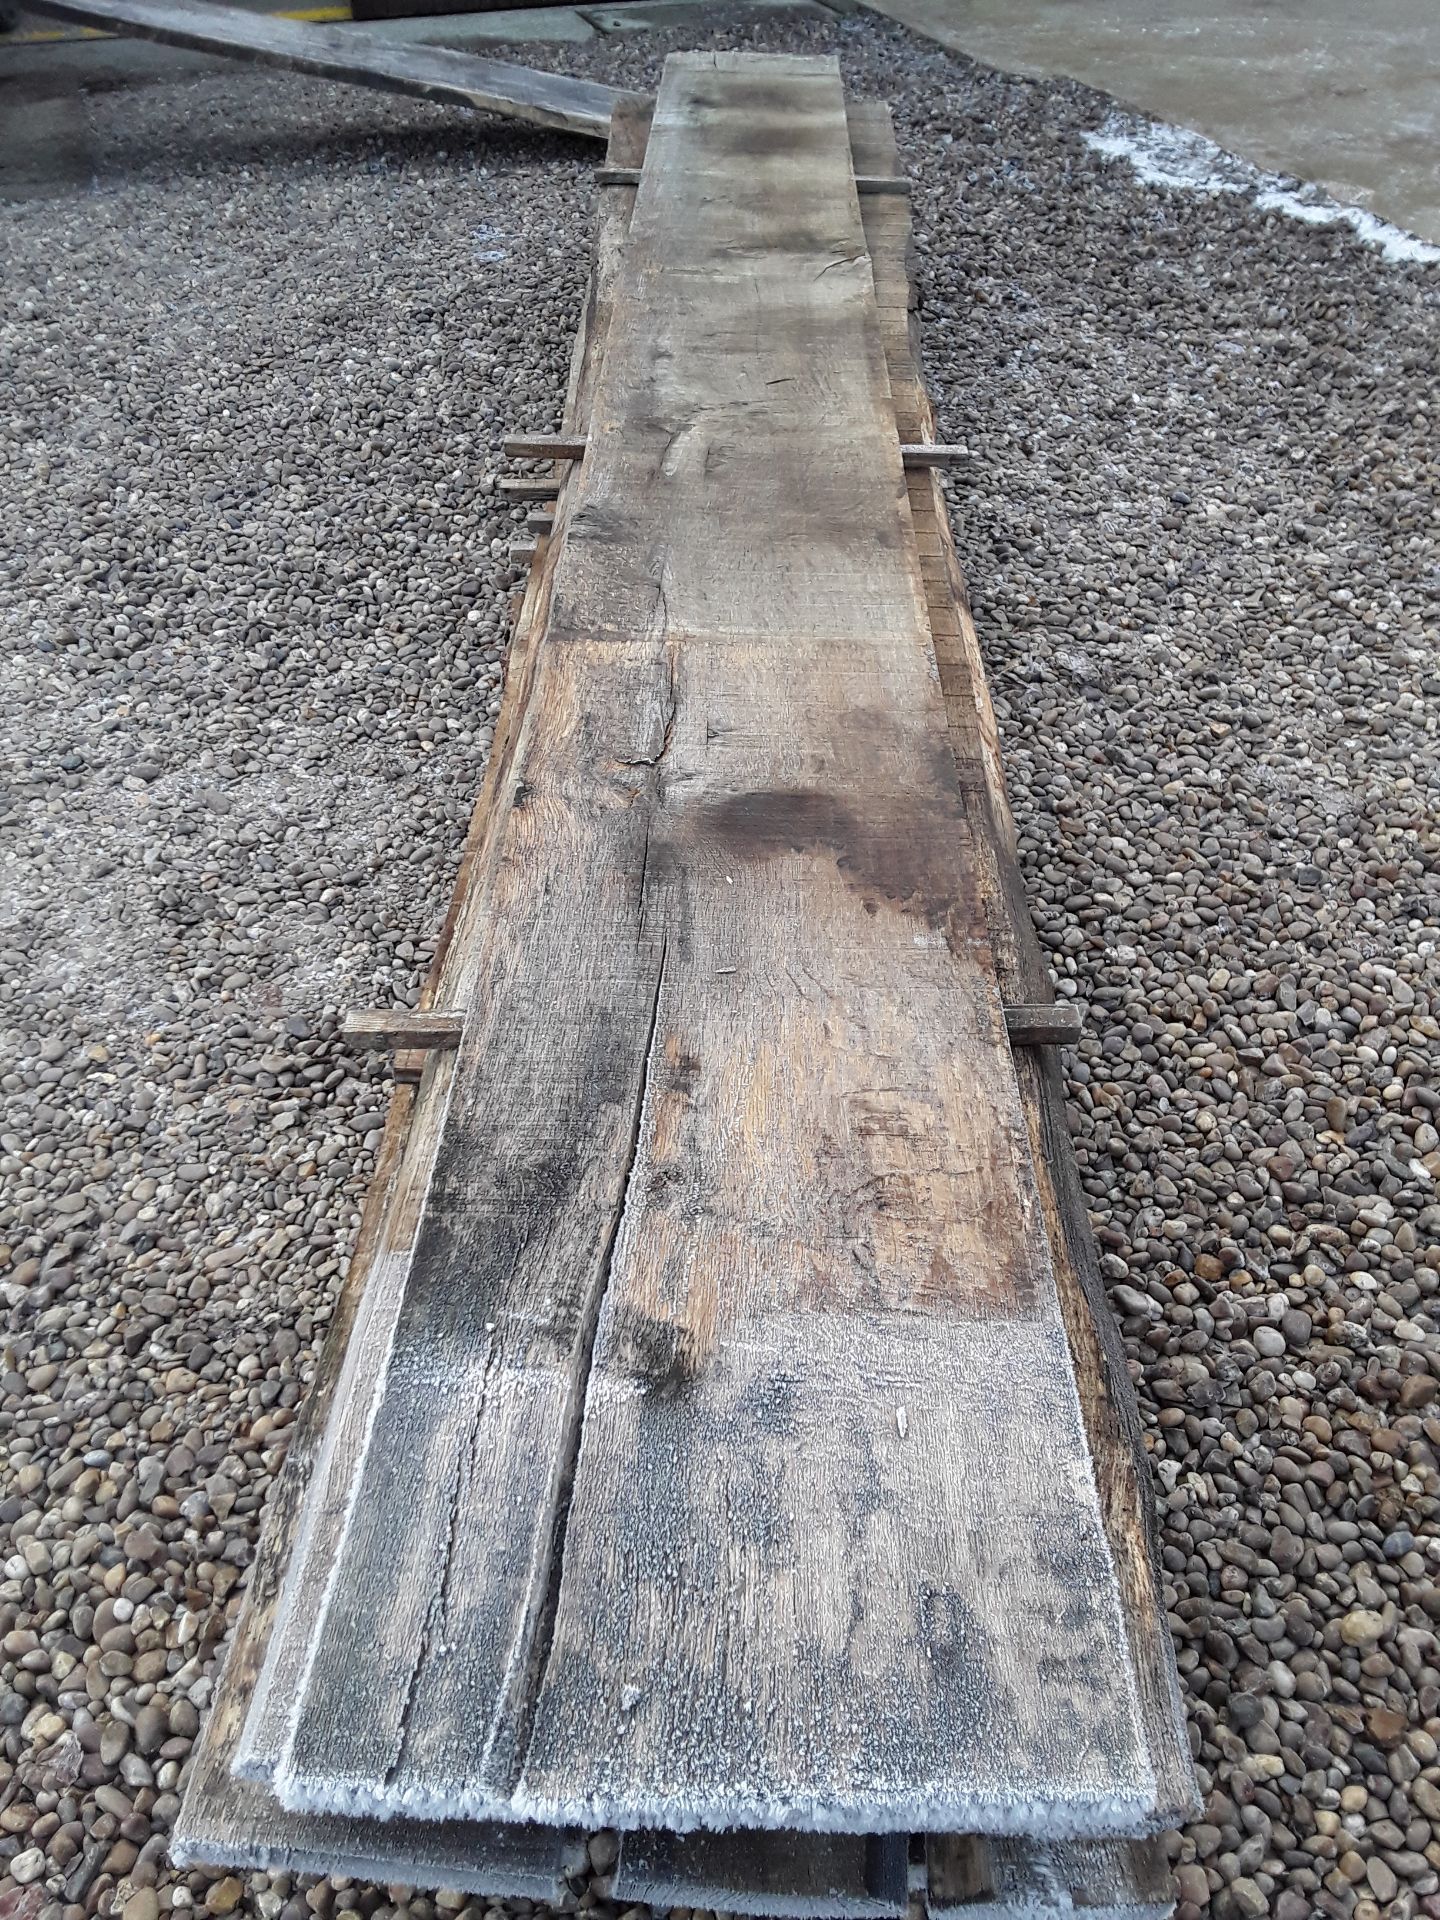 10 x Hardwood Timber Sawn Seasoned English Oak Waney Edge / Live Edge Boards/ Planks - Image 7 of 15